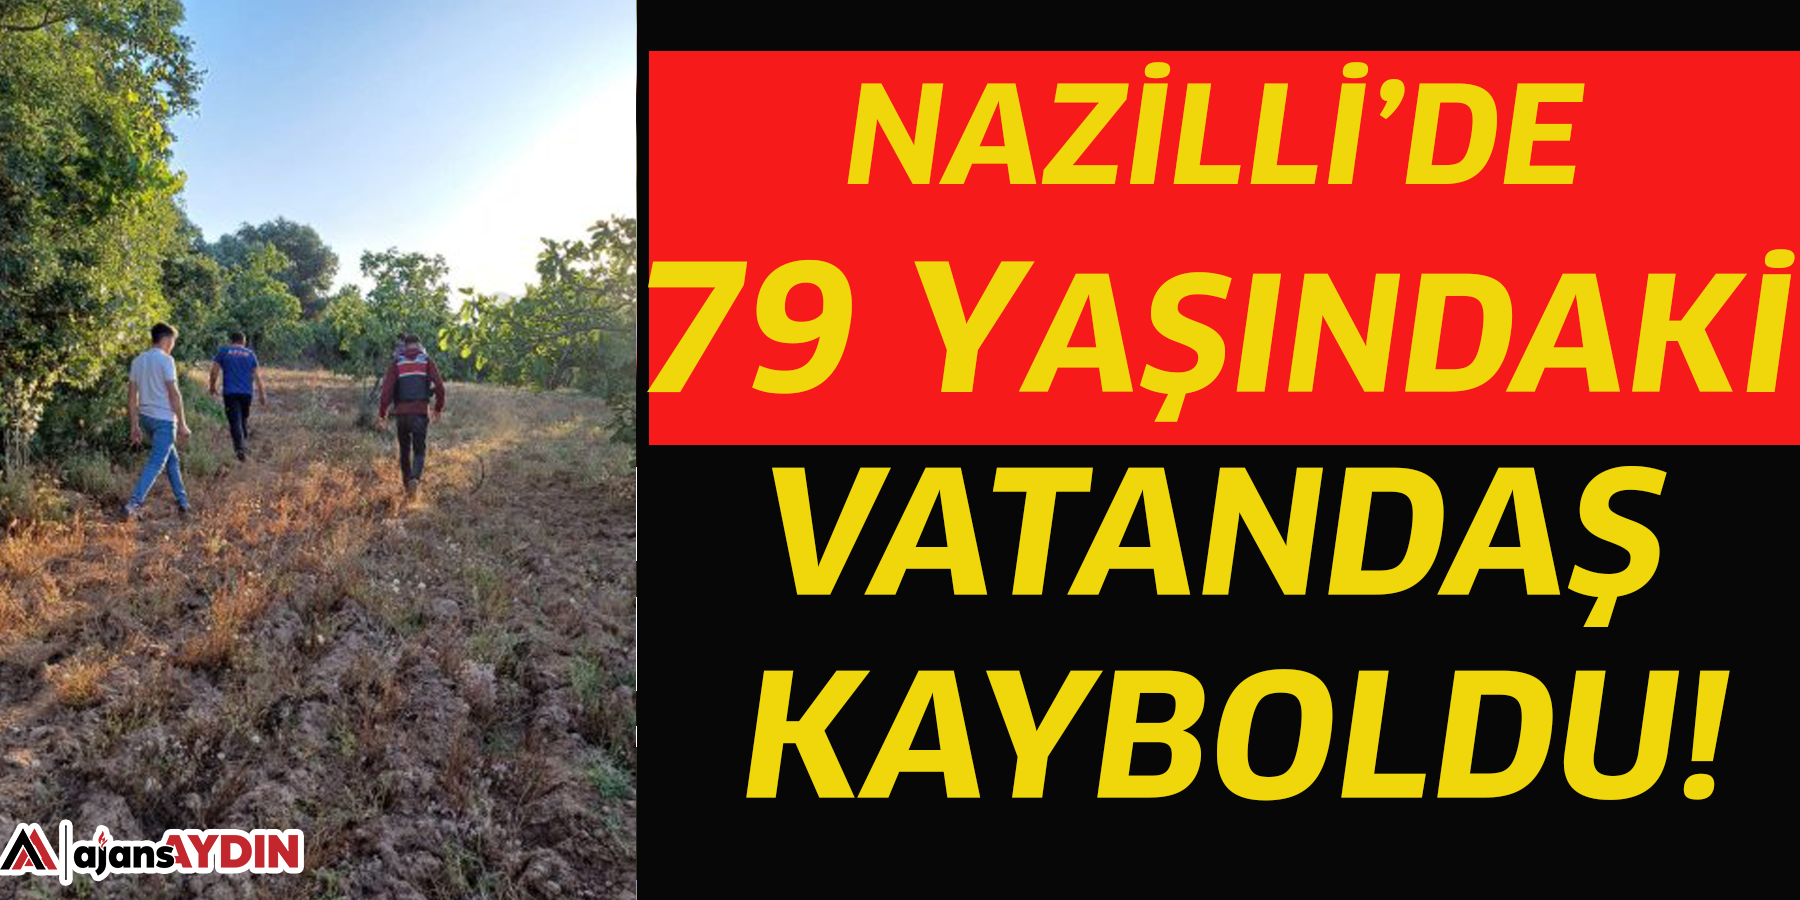 Nazilli’de 79 yaşındaki vatandaş kayboldu!